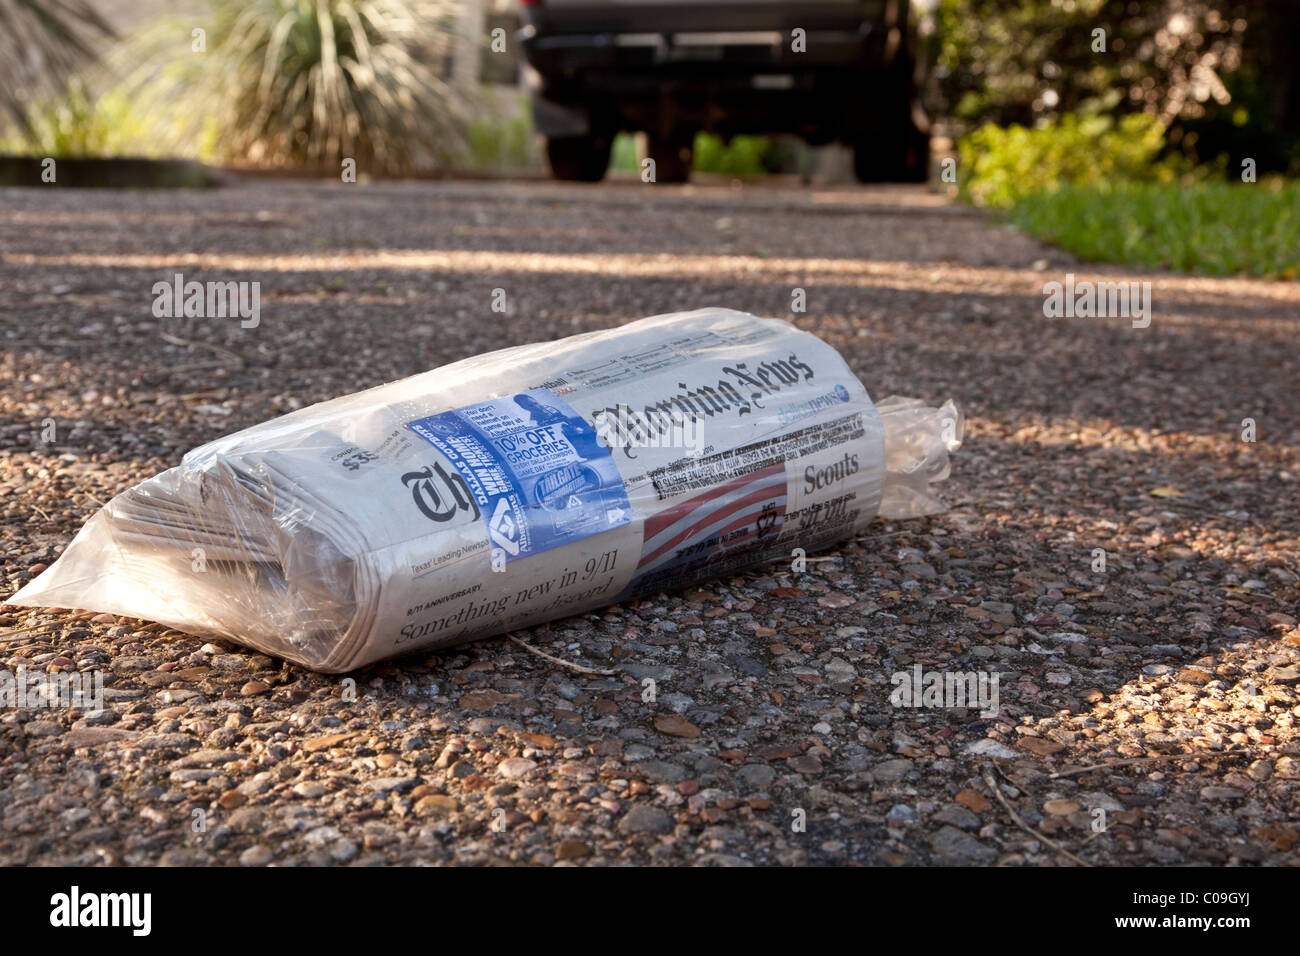 Copie livrés à domicile du Dallas Morning News enveloppé dans un sac en plastique repose sur l'allée de résidence à Austin au Texas Banque D'Images